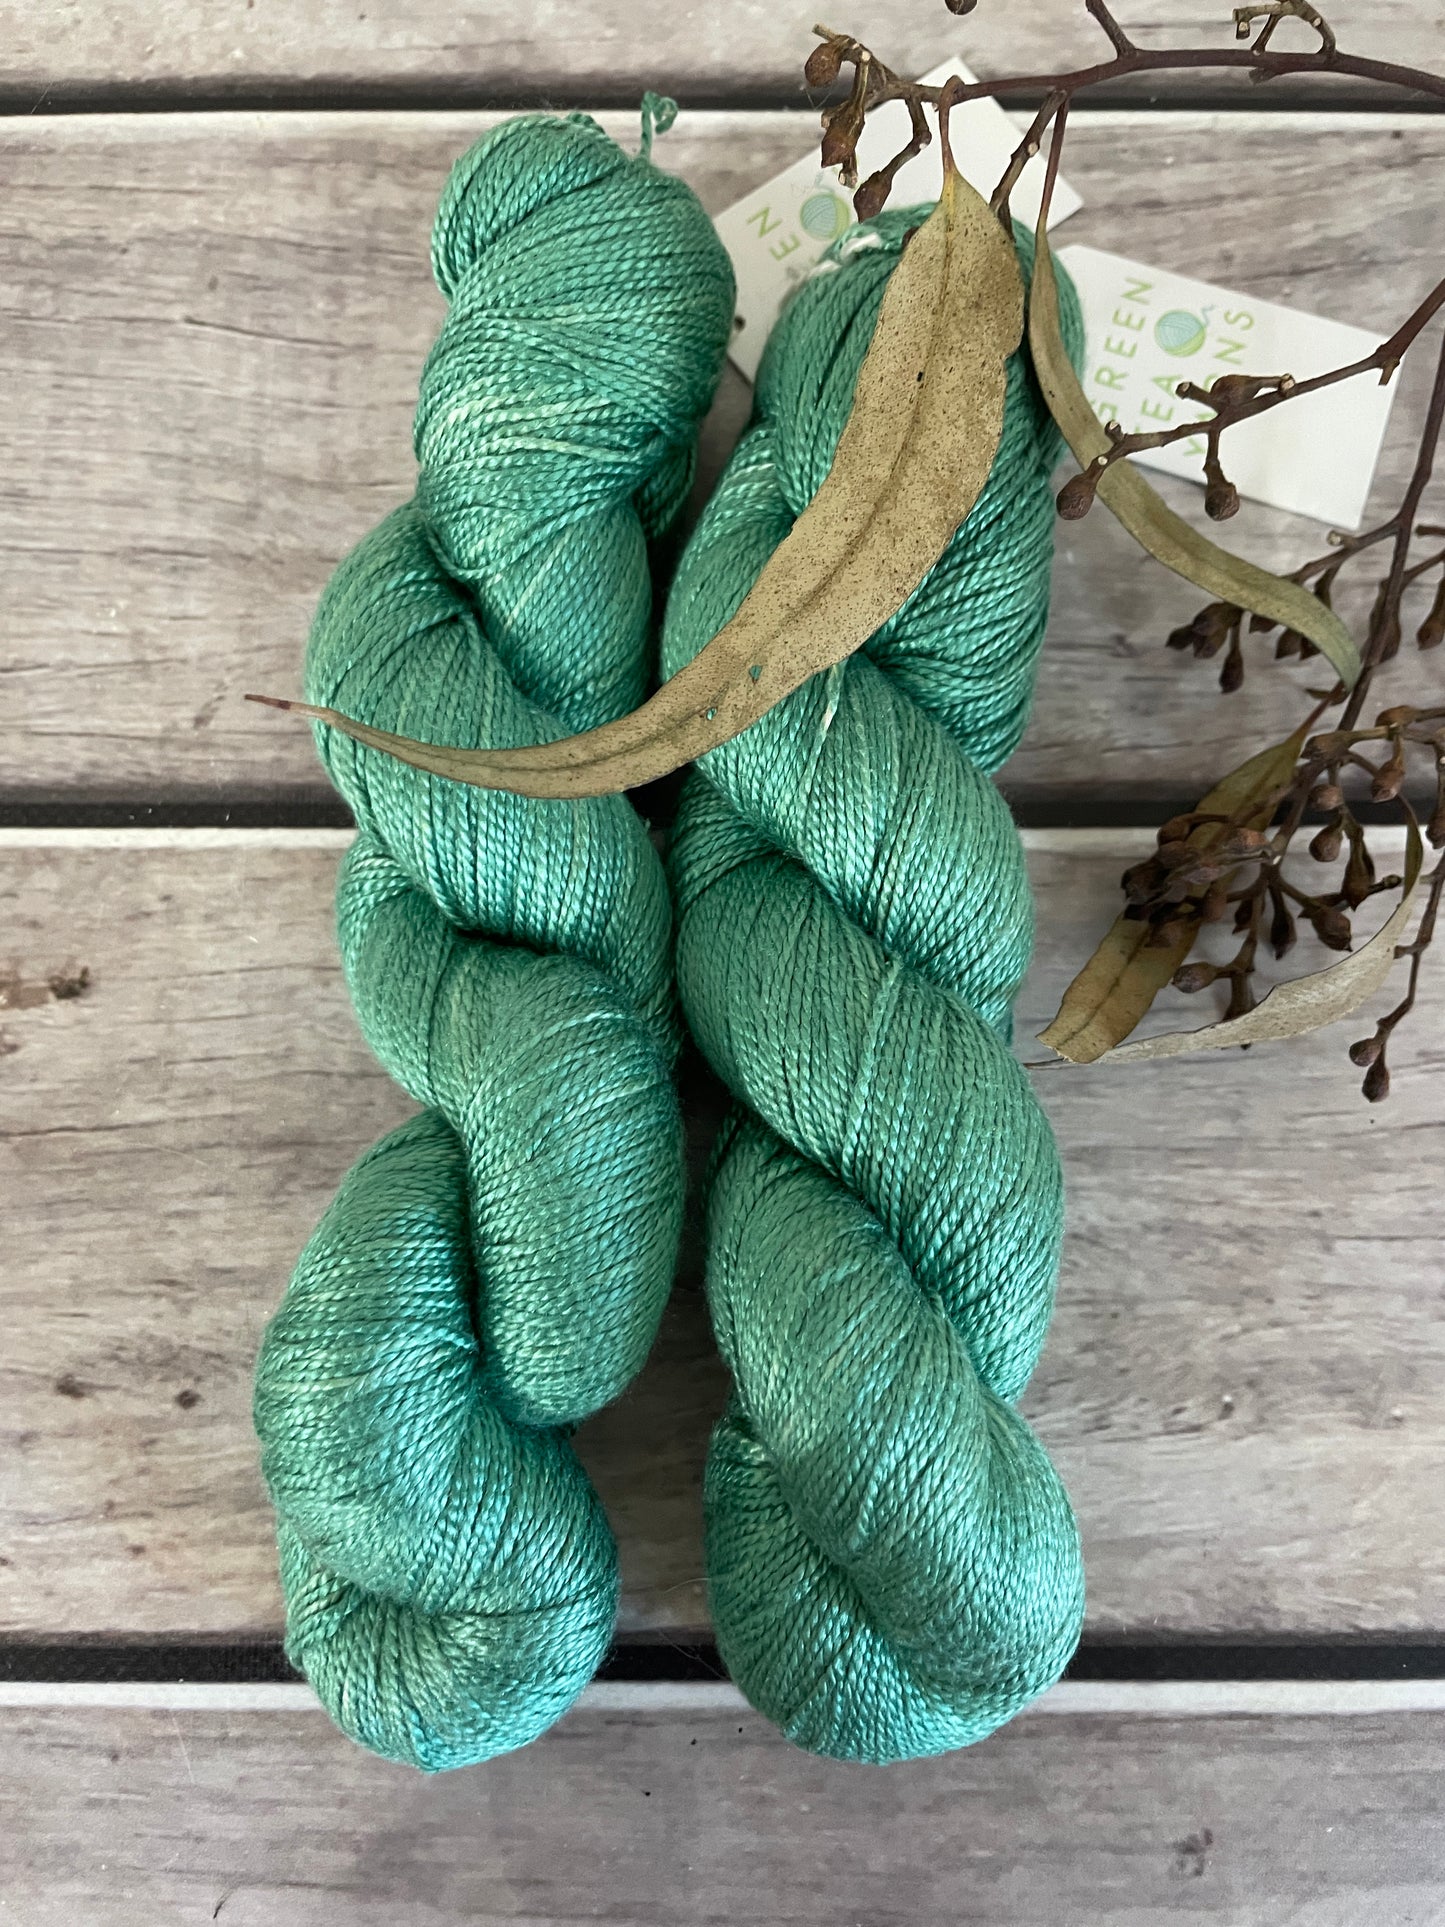 Emerald Bay Light ooak - 4 ply silk  - Ginseng f